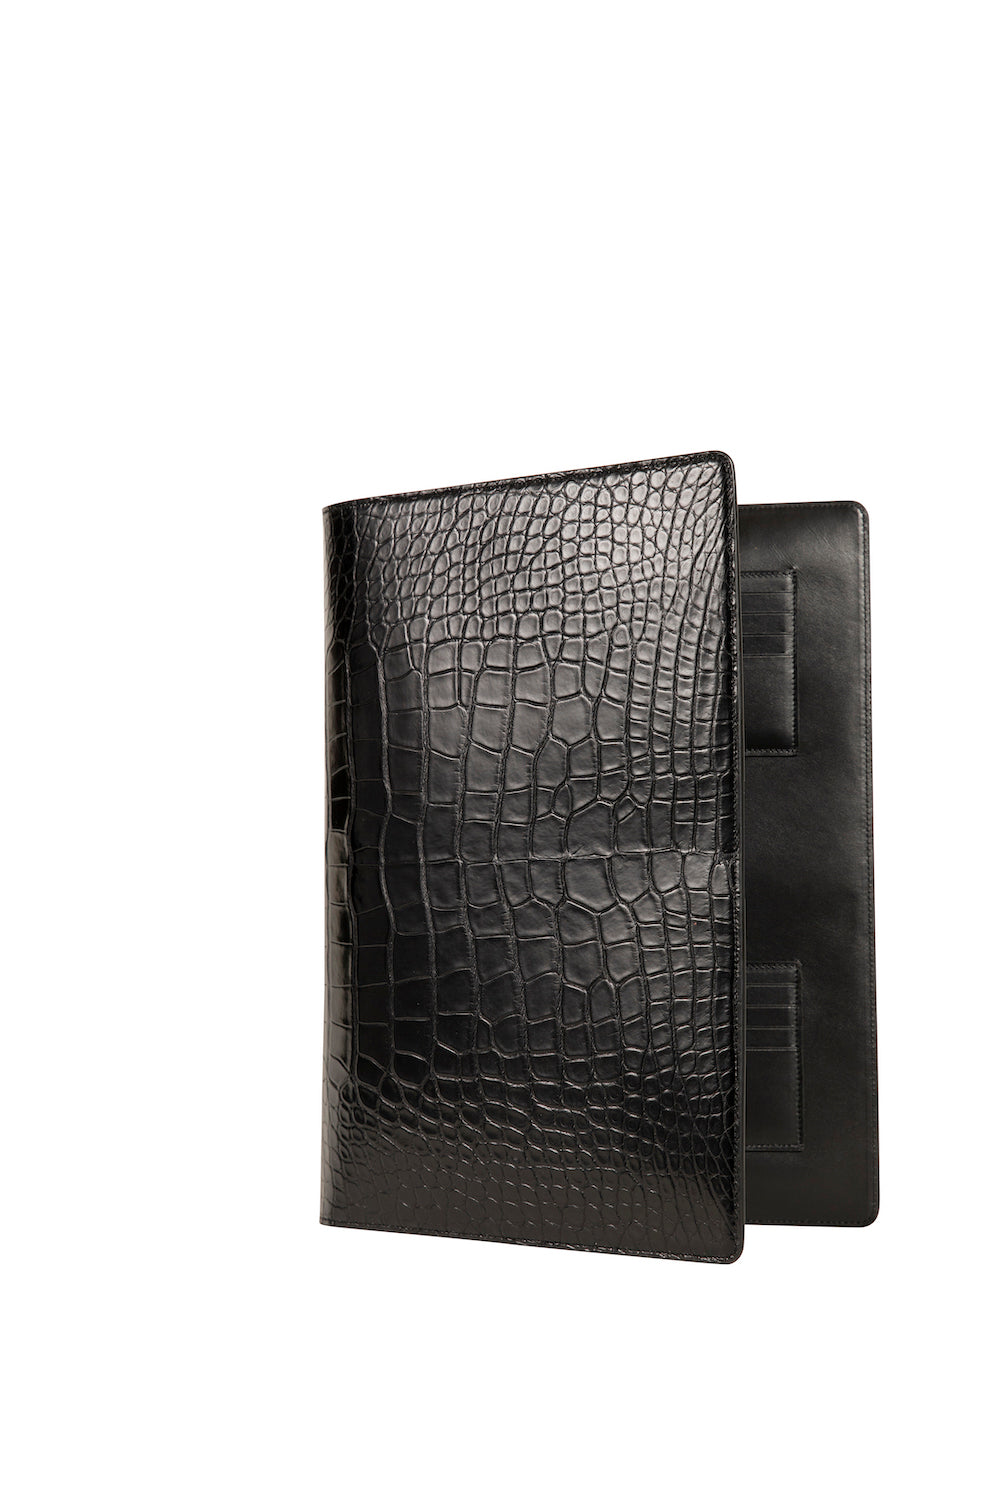 Handmade Crocodile Skin Clutch Wallet Business Portfolio Briefcase